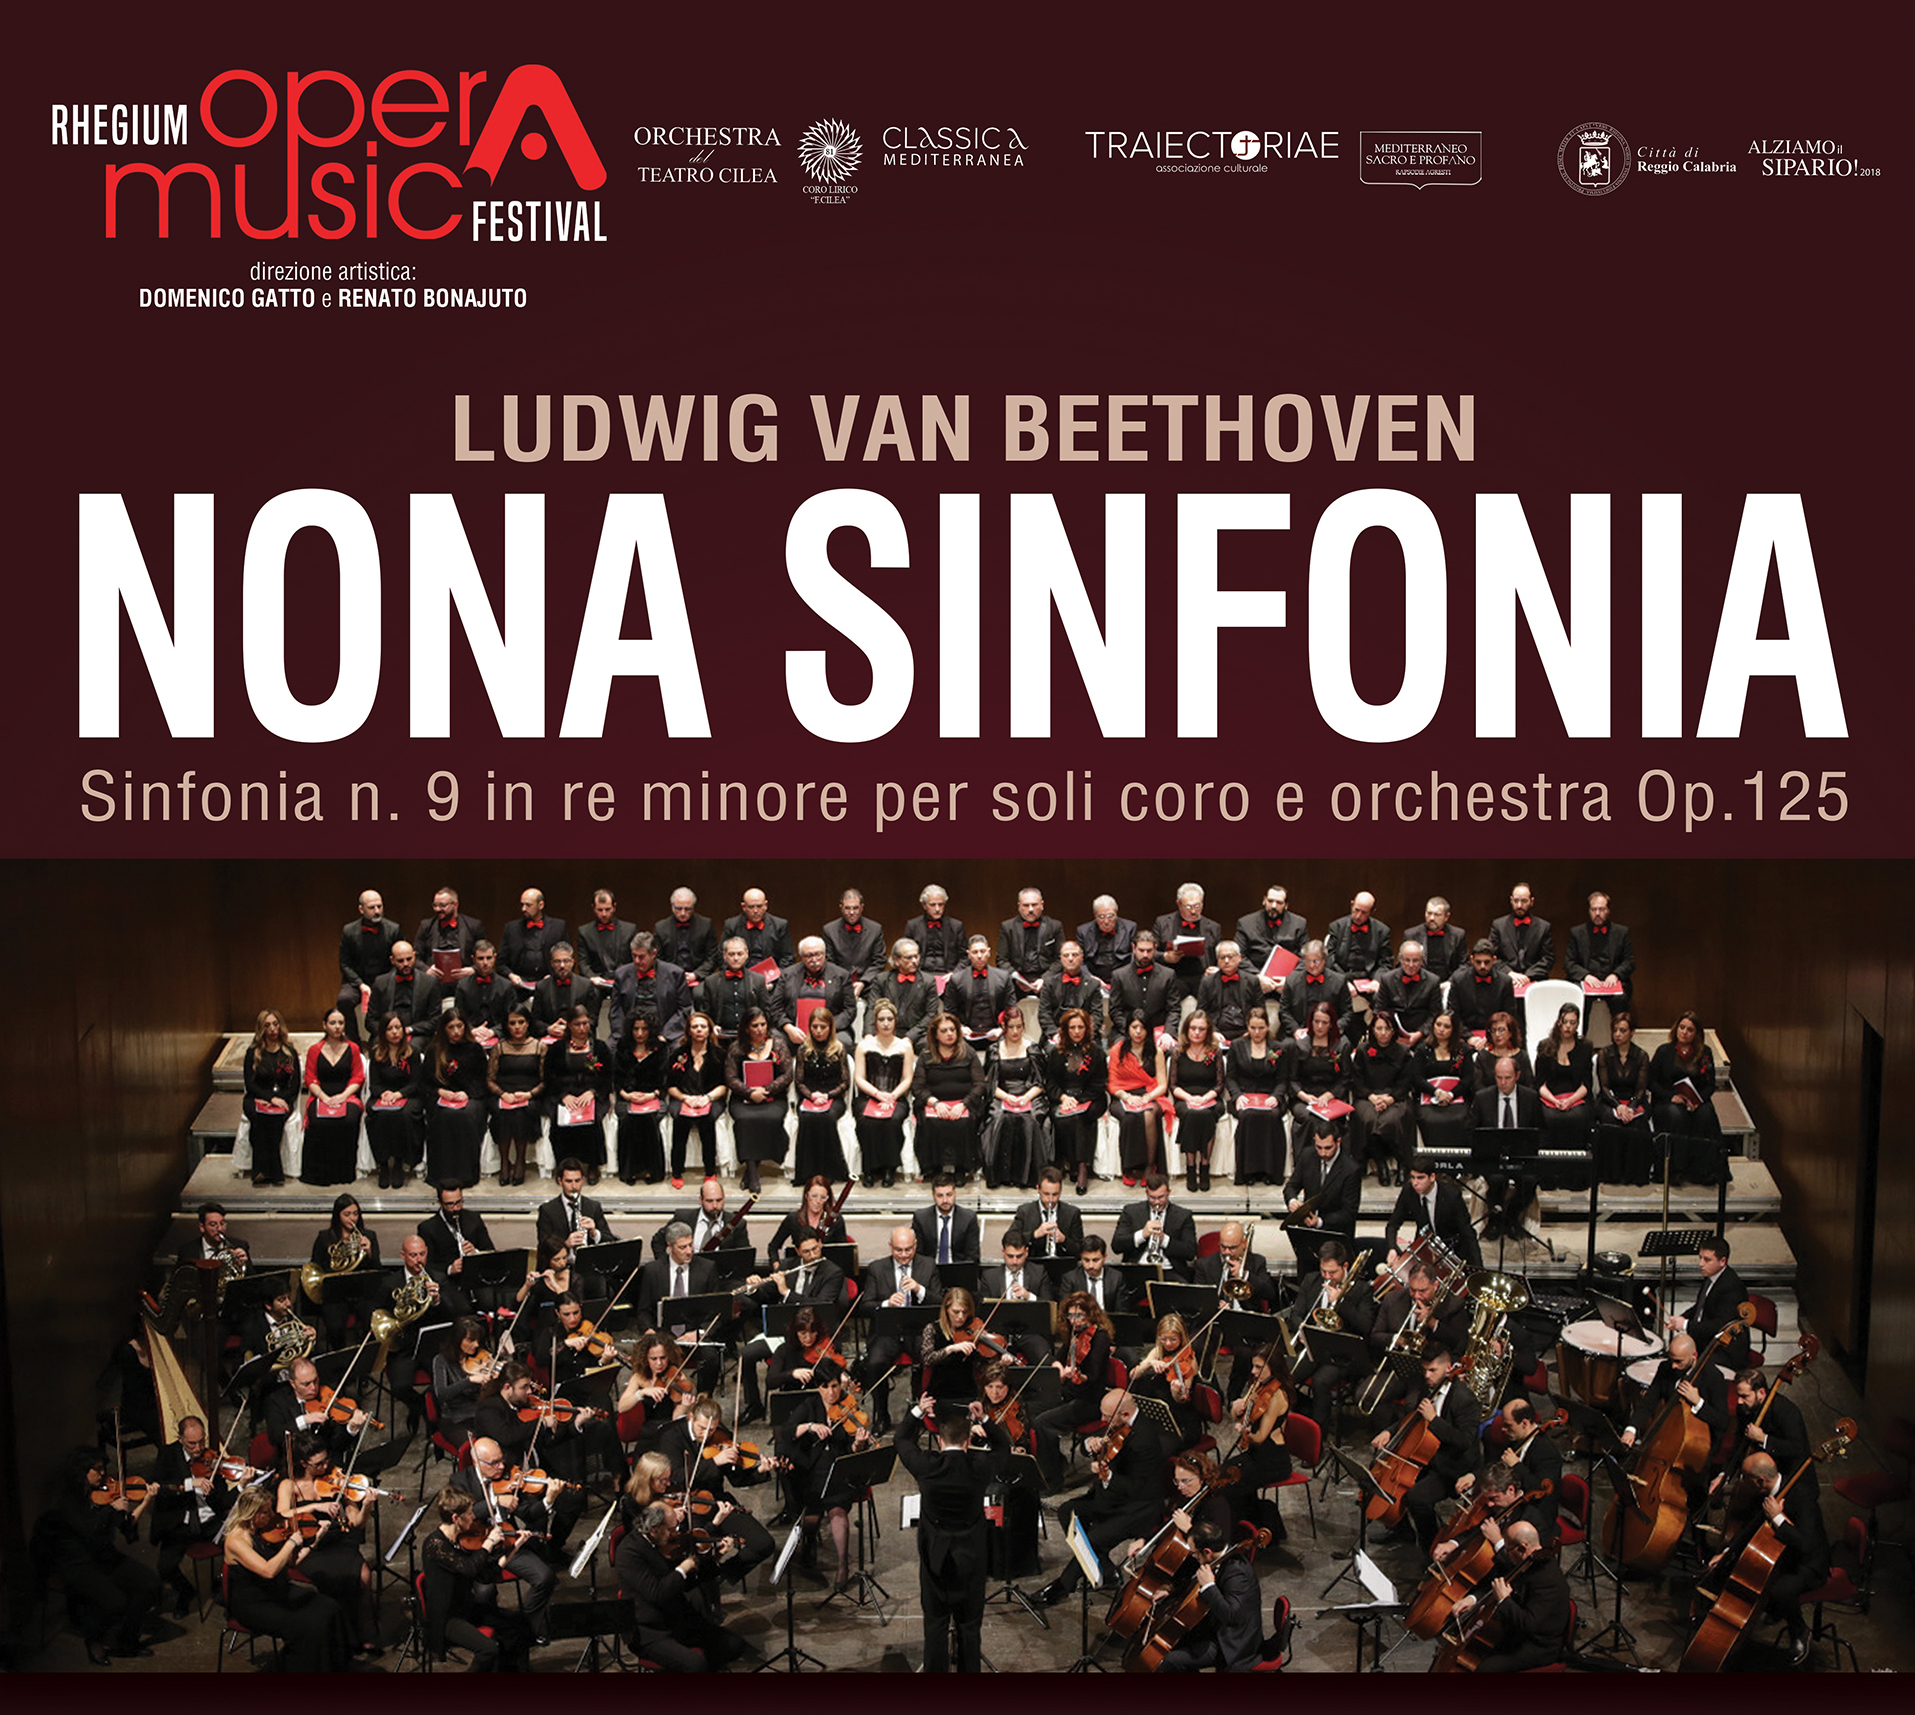 Venerdì 1° febbraio la “Nona Sinfonia” di Beethoven al Cilea di Reggio Calabria